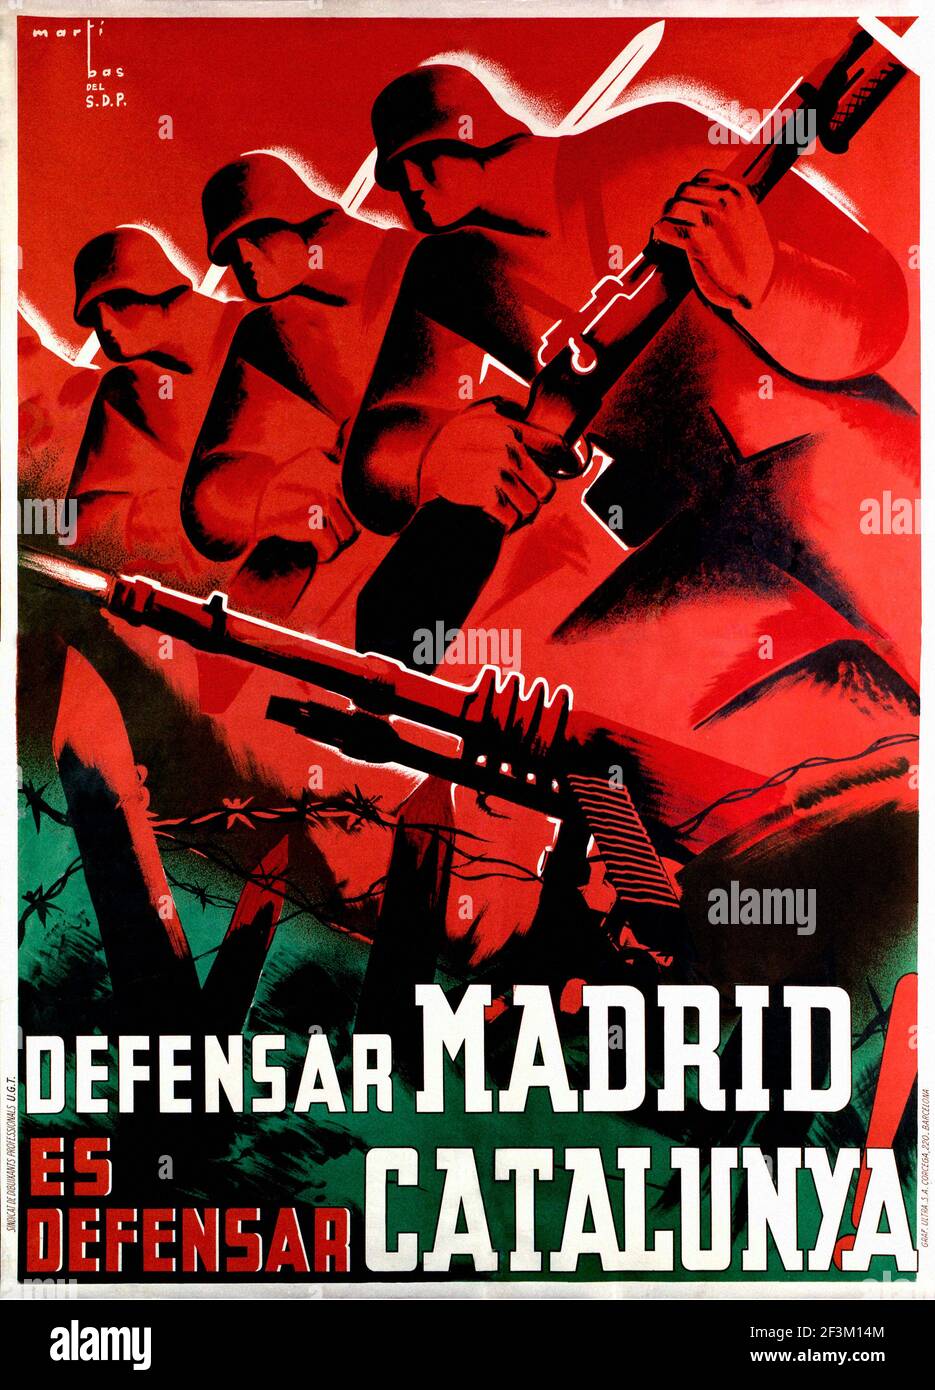 Affiche de propagande espagnole de la guerre de Sécession. Défendre Madrid, c'est défendre la Catalogne ! 1937 Banque D'Images